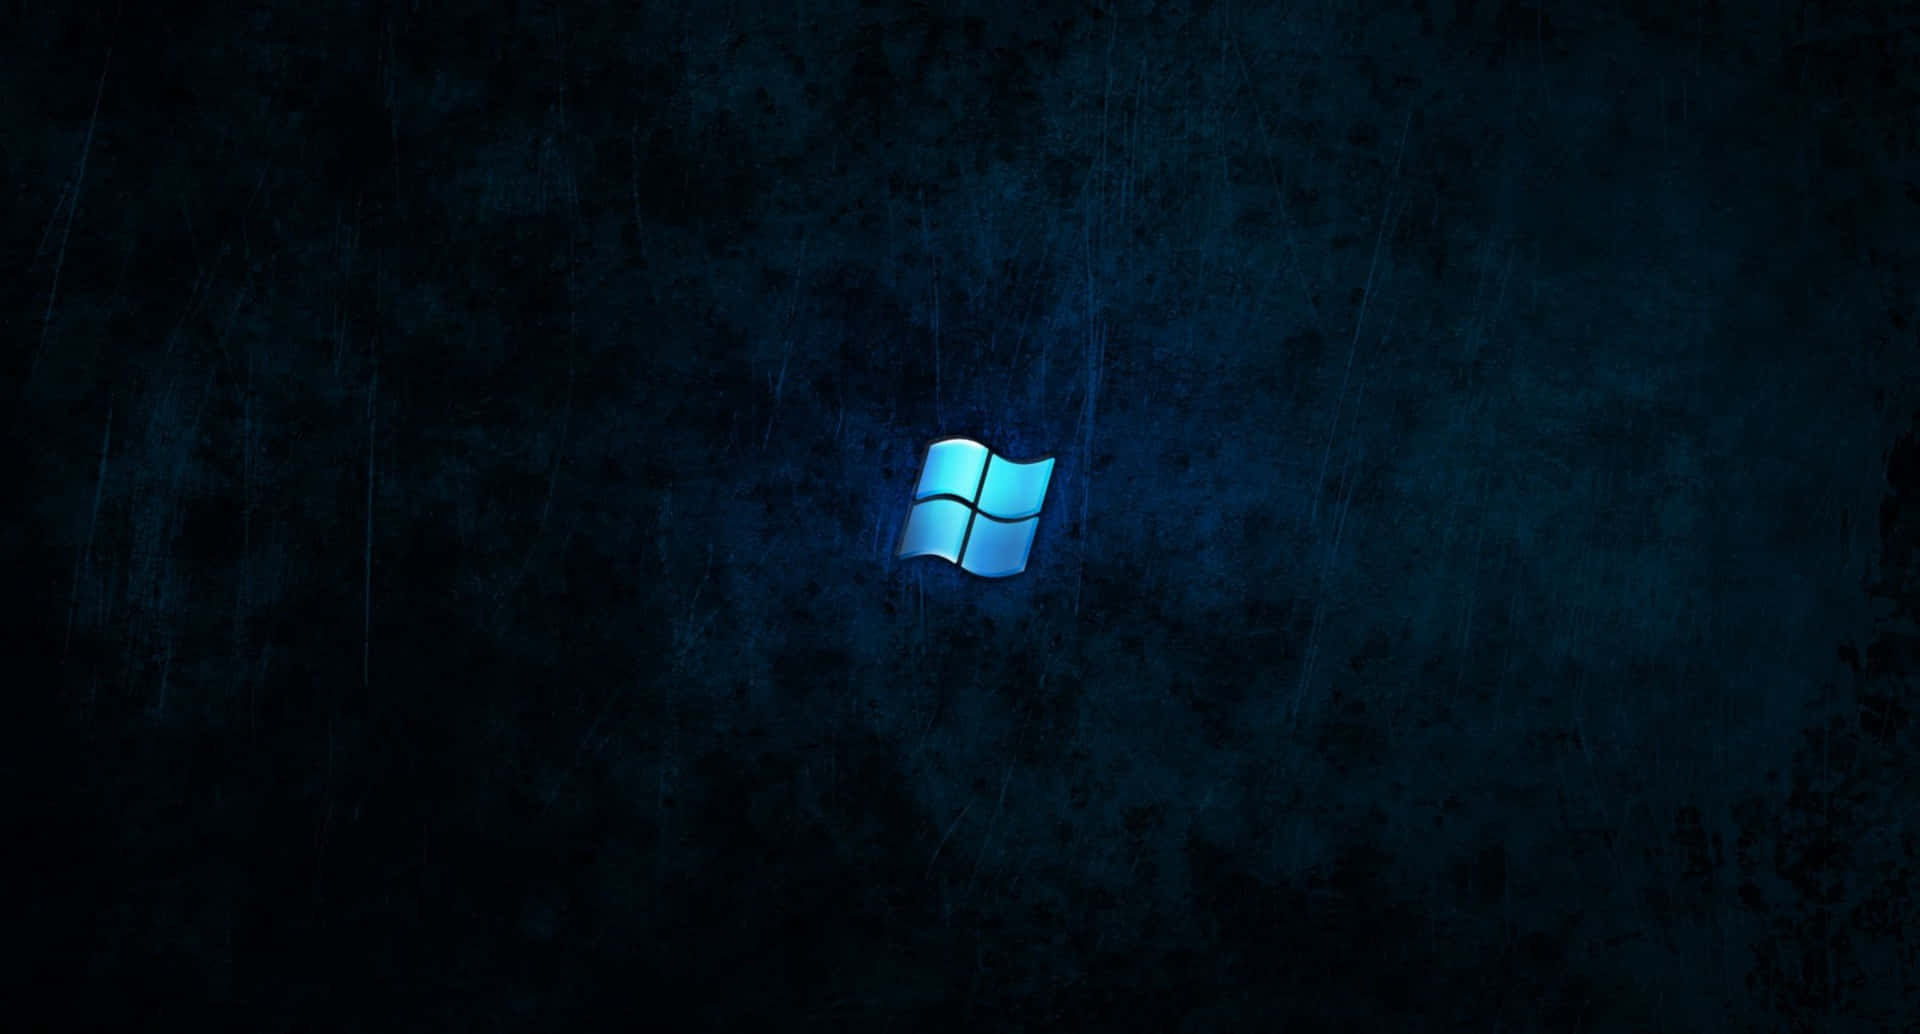 Windowslogobakgrundsbilder I Hd. Wallpaper